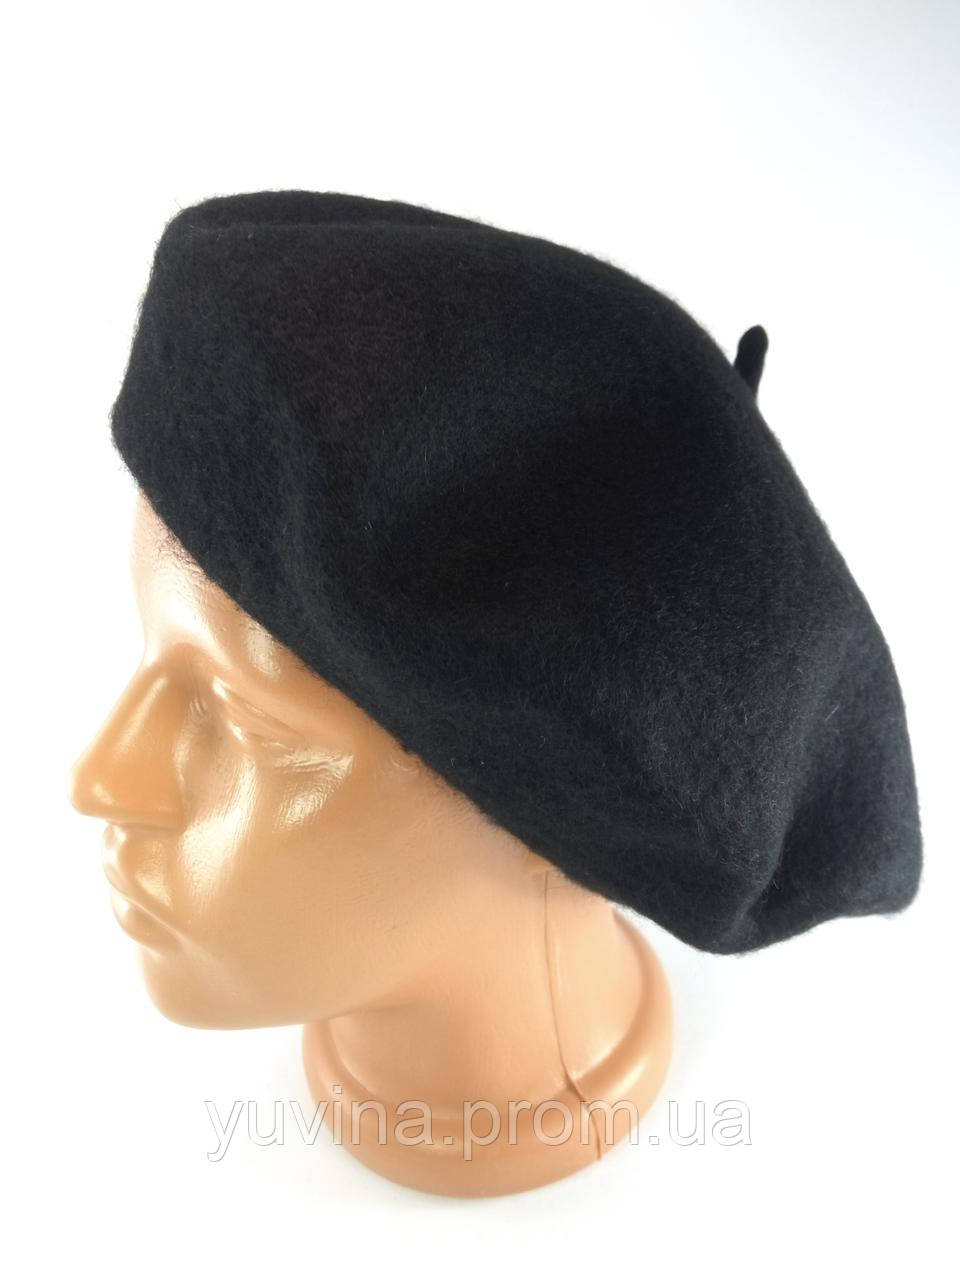 Бере чорний жіночий вовняний берет фетровий шапка-берет на осінь зиму Жіночі шапки берети модні